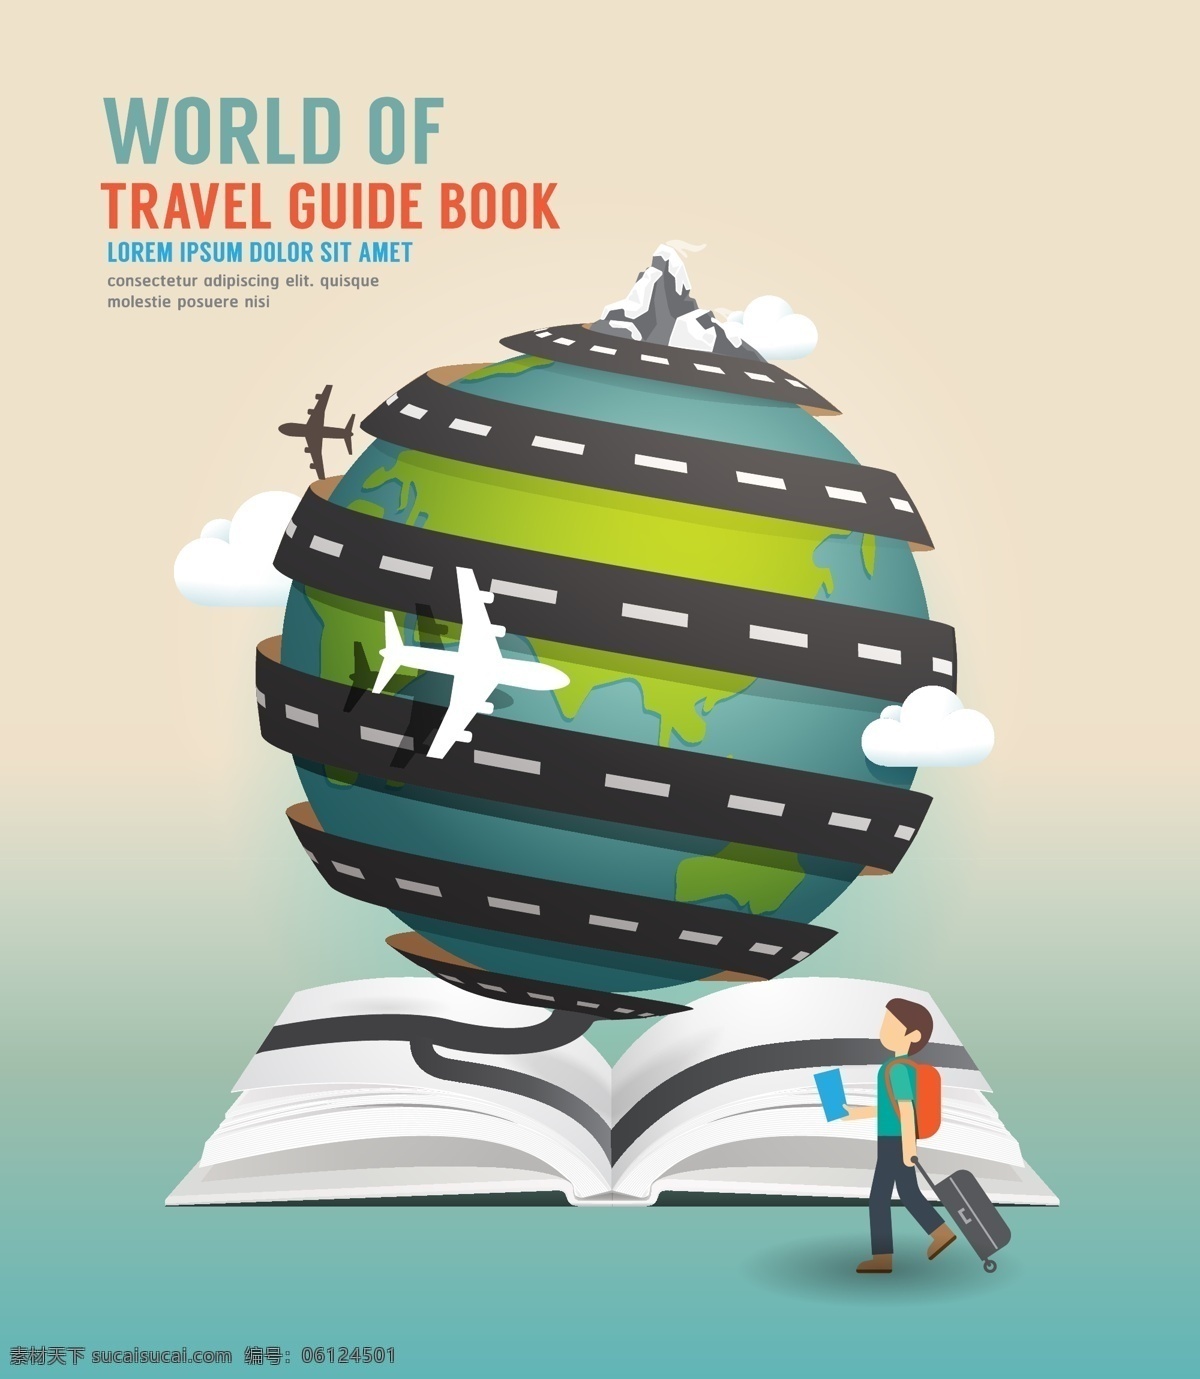 环球 旅行 指南 书籍 创意 环球旅行 旅行指南 地球 轨迹 矢量 高清图片